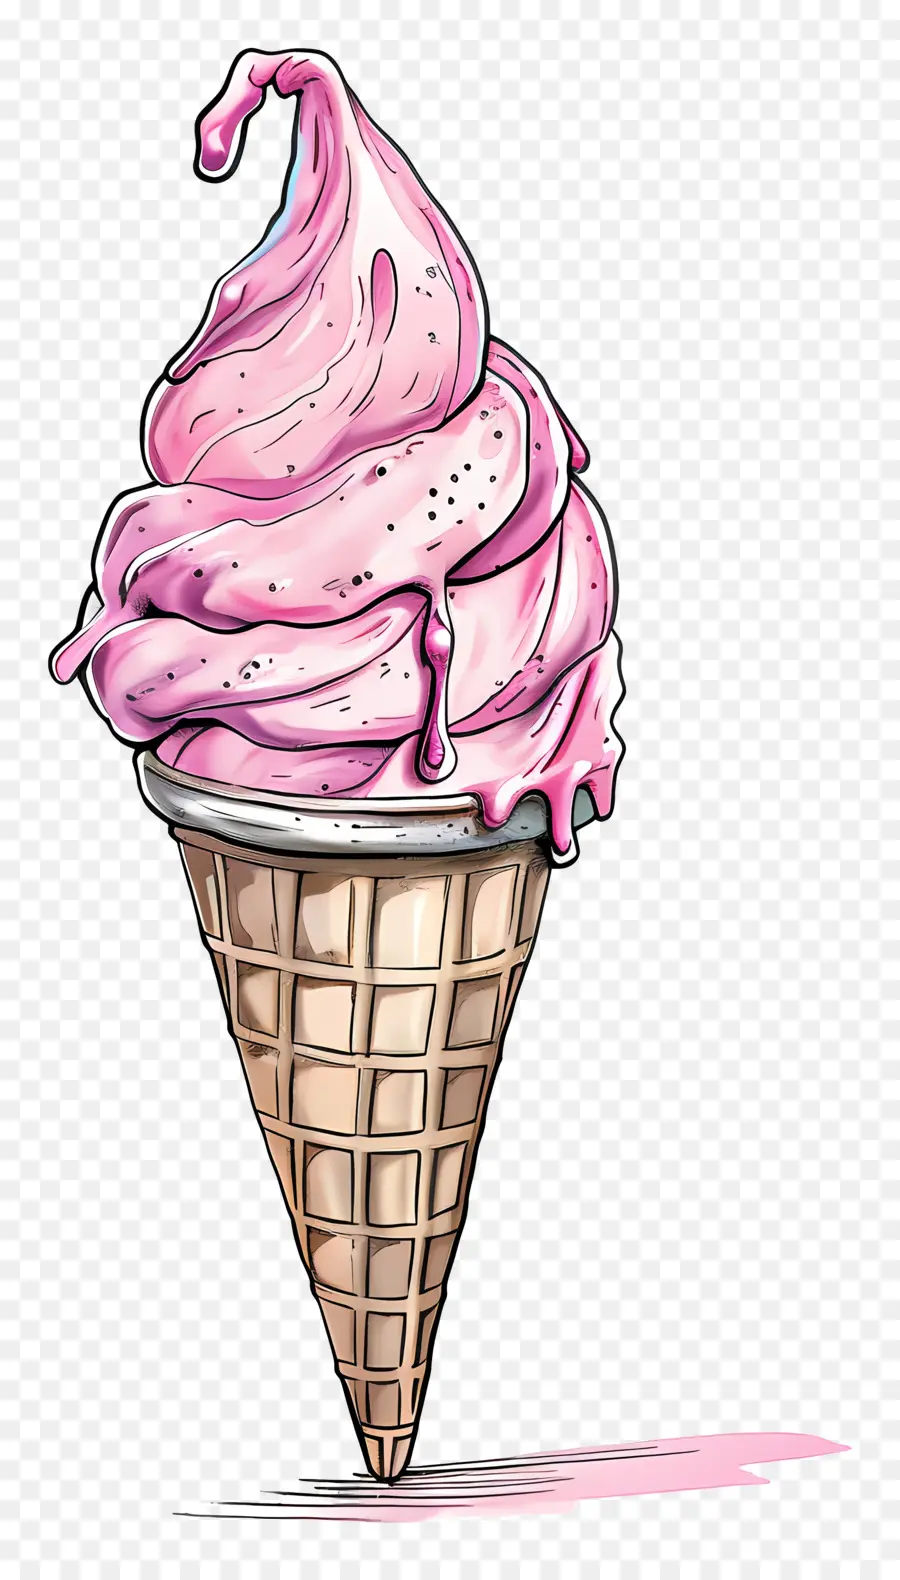 cono gelato rosa gelato gelato cono cono turbato di texture salsa alla vaniglia - Cono di gelato rosa con salsa alla vaniglia